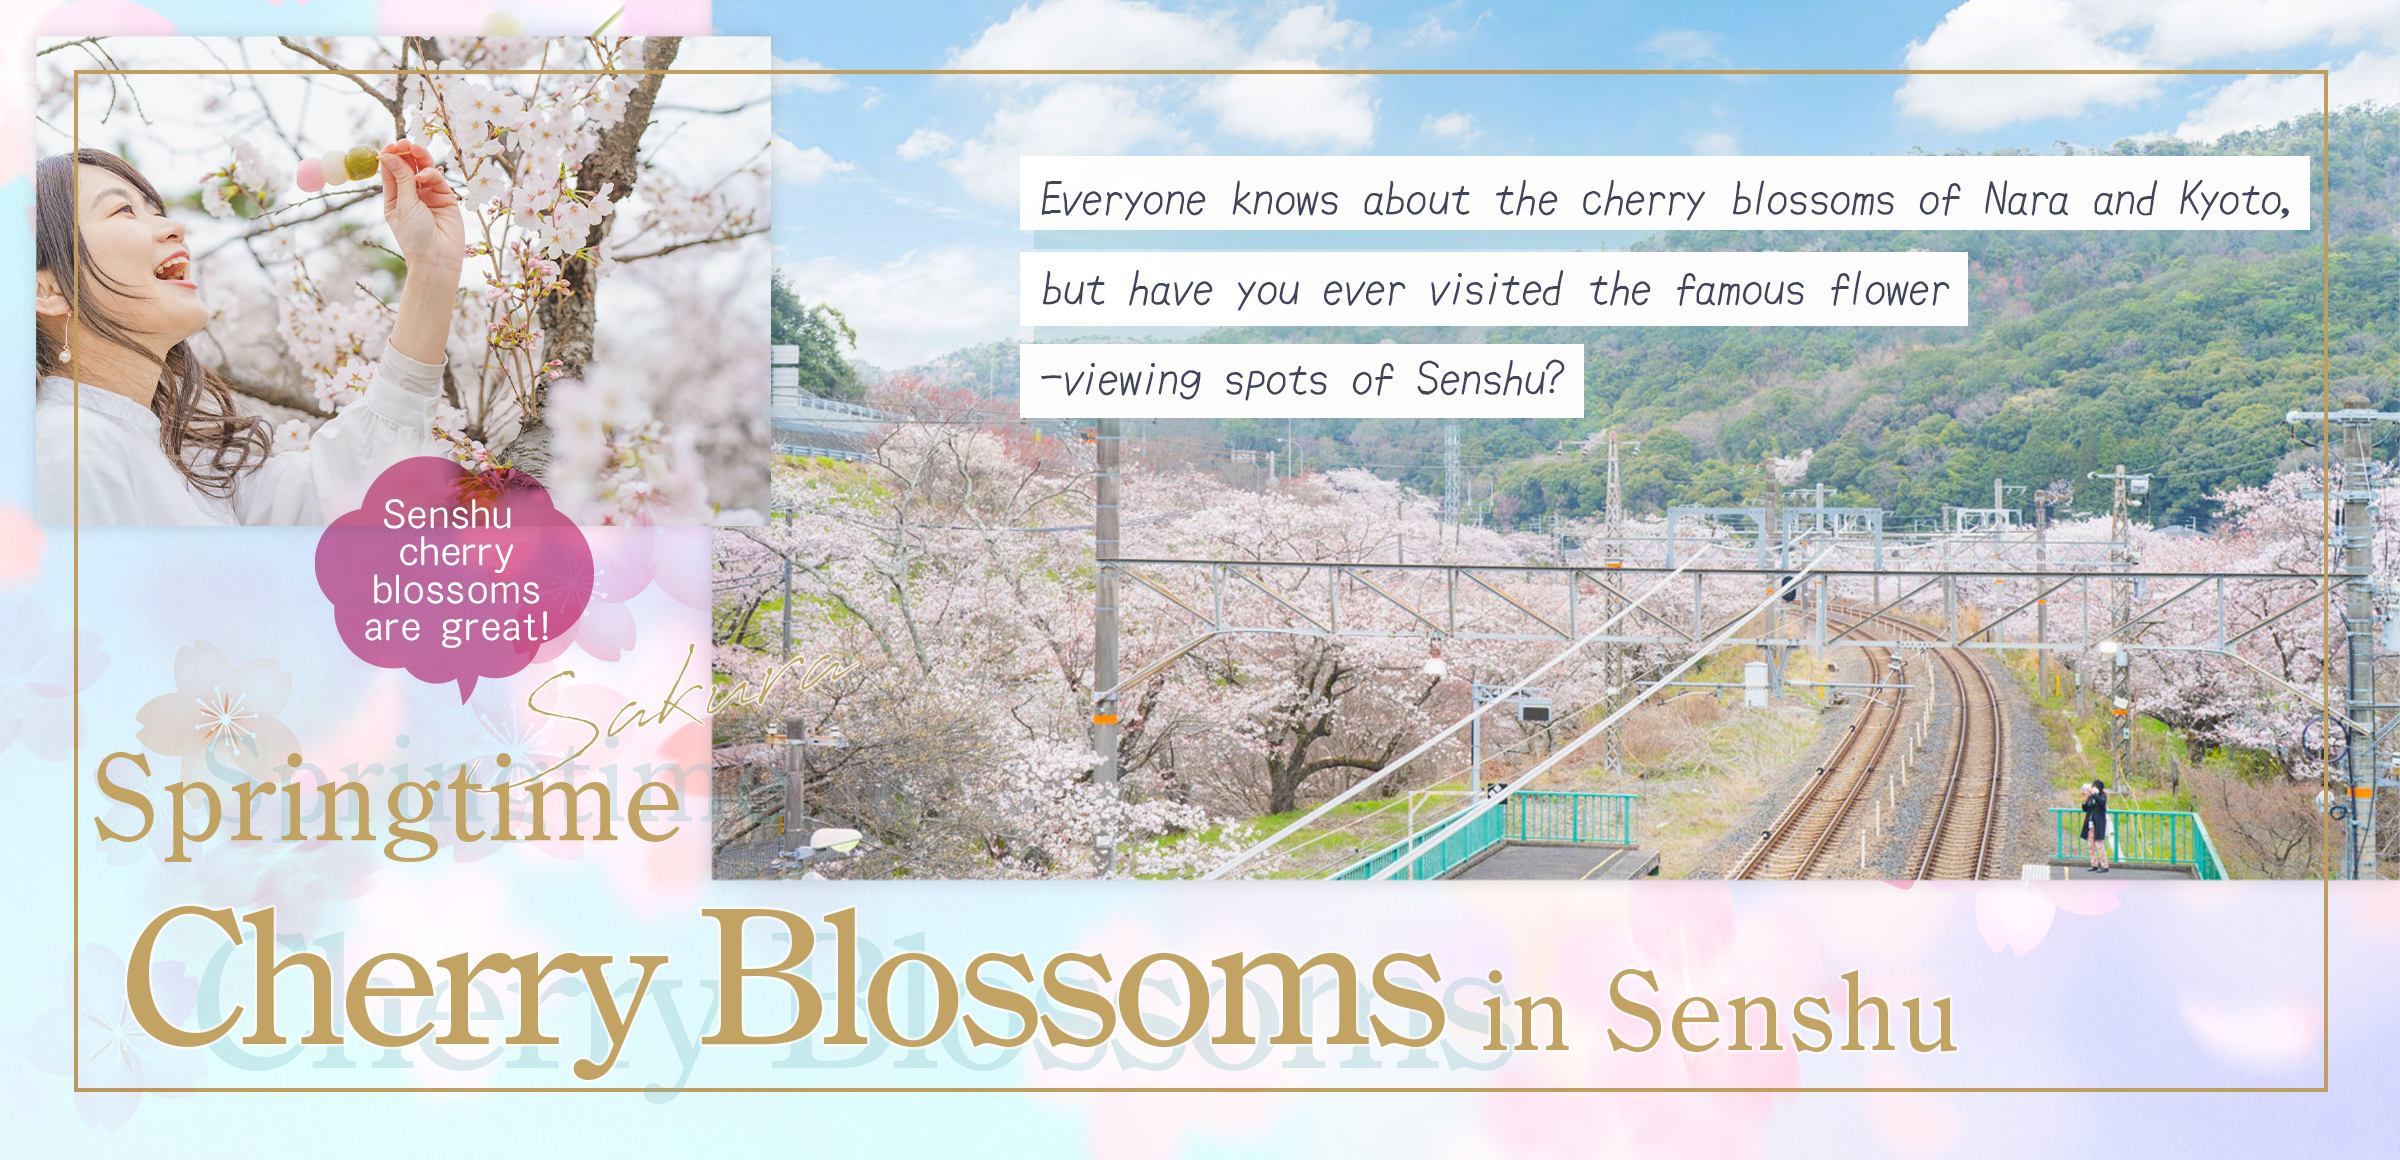 Springtime Cherry Blossoms in Senshu